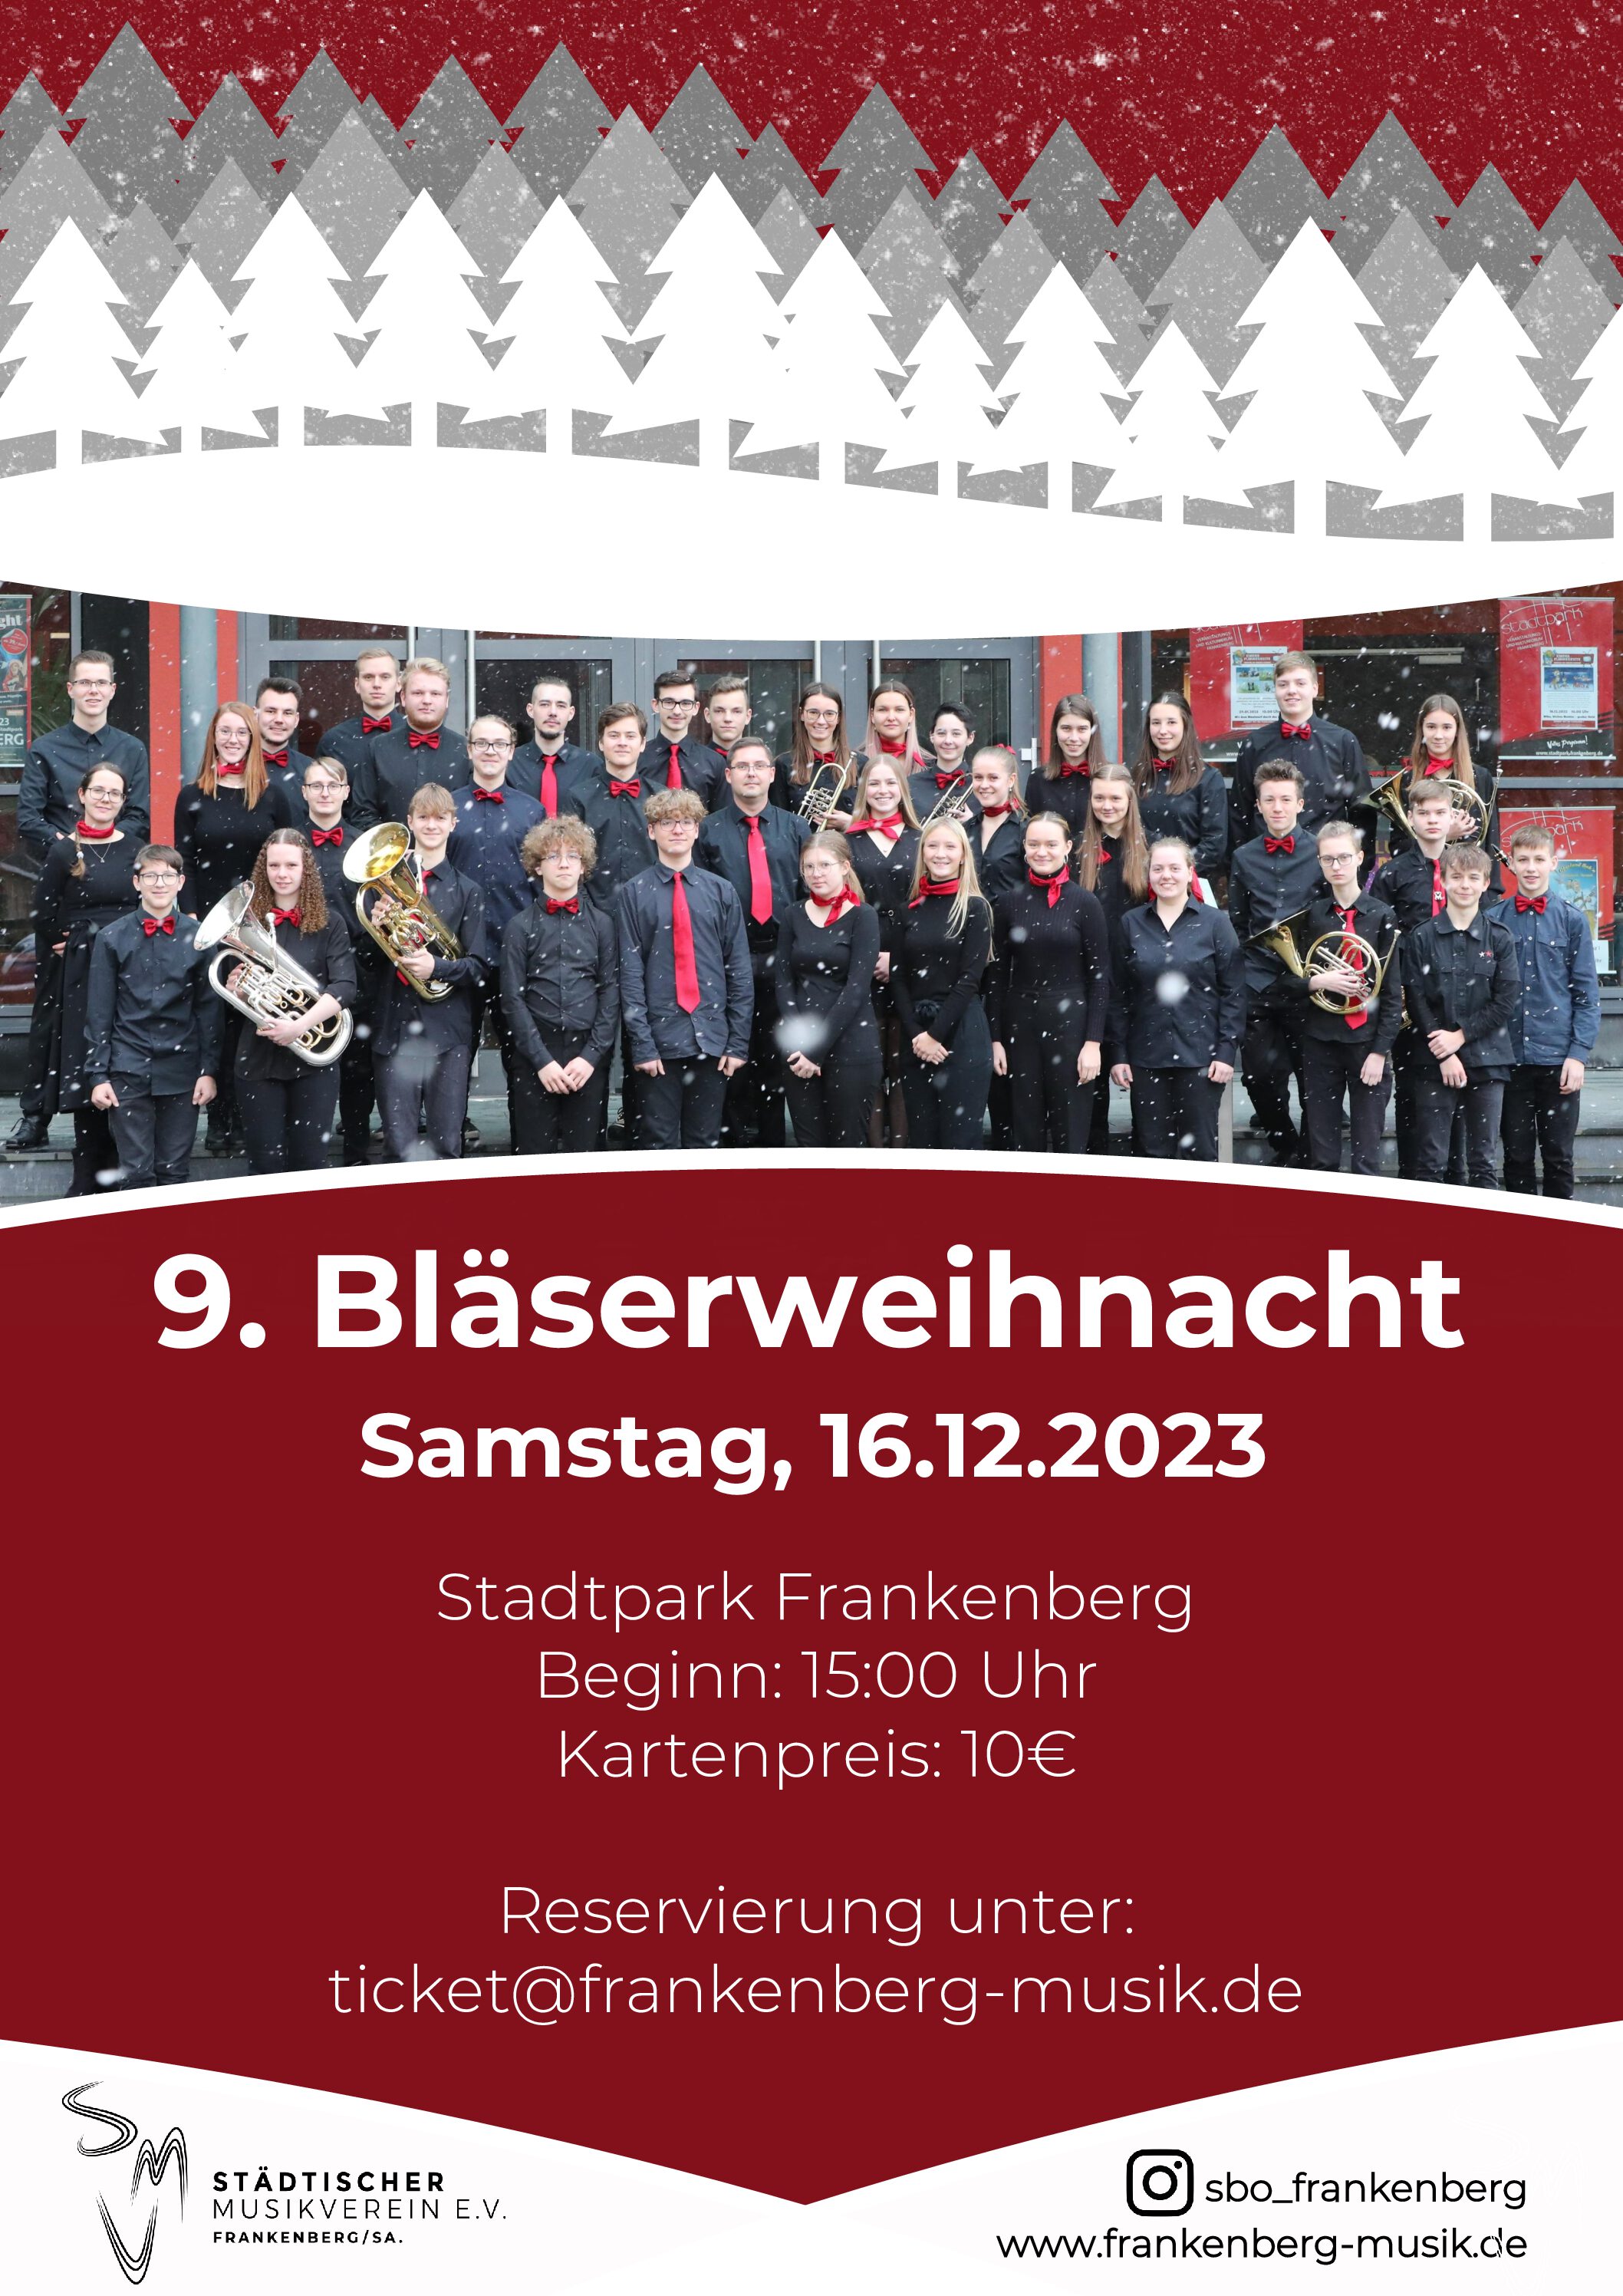 Musikalische Weihnachtstradition – 9. Bläserweihnacht des Städtischen Musikvereins Frankenberg e.V.